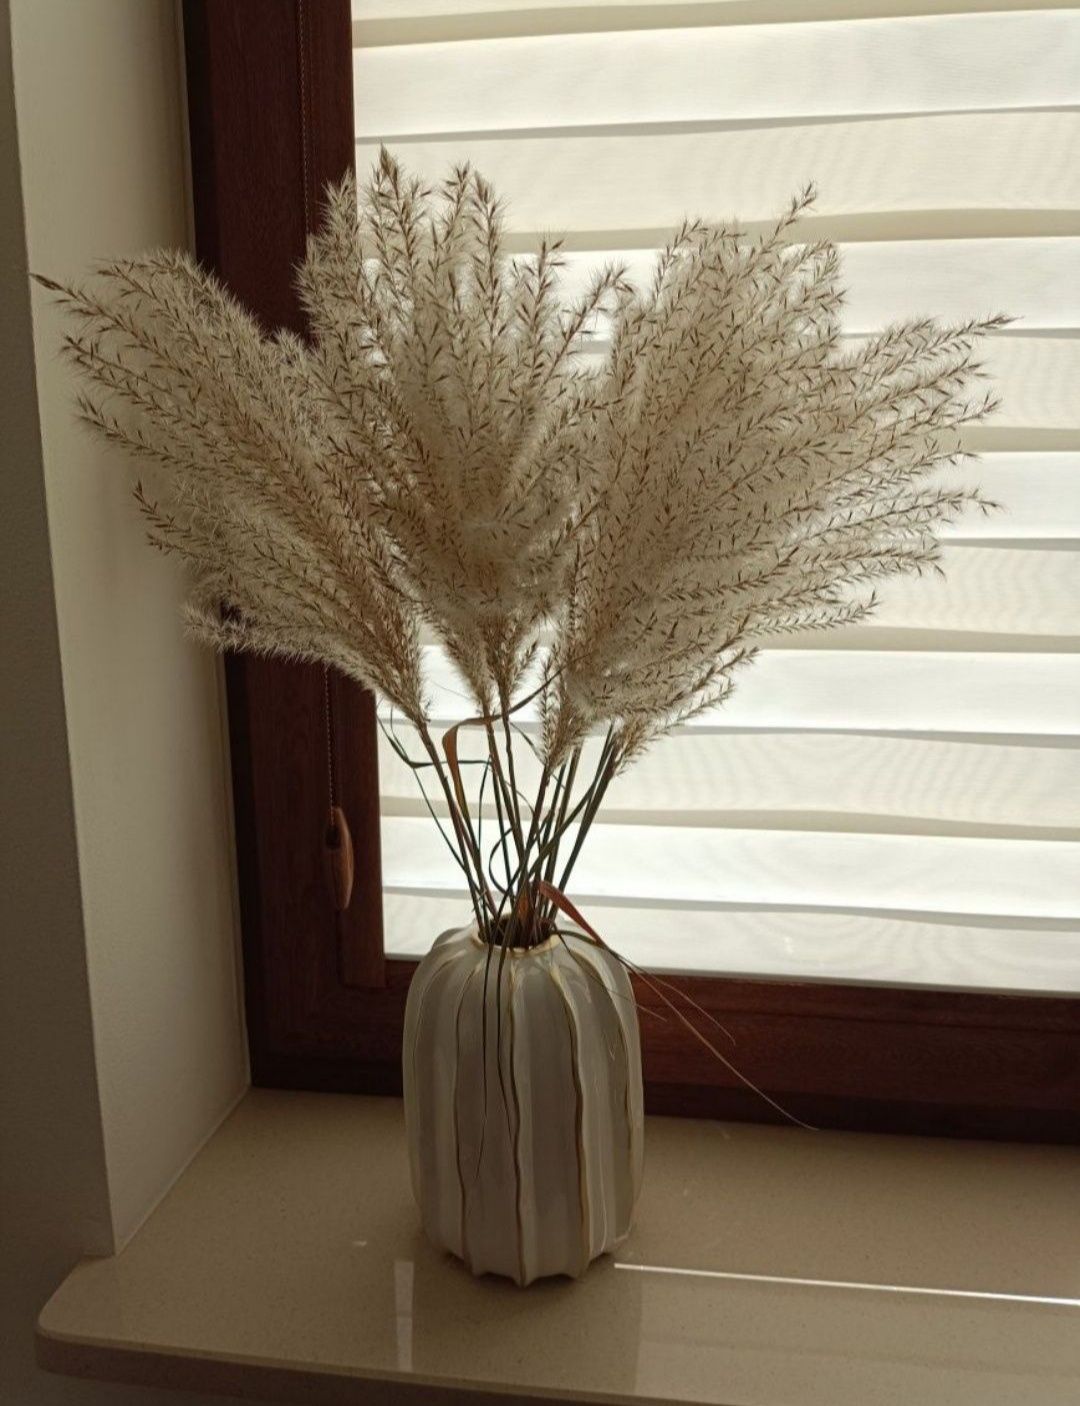 Naturalna trawa ozdobna do wazonu ok. 60 cm wysokosci